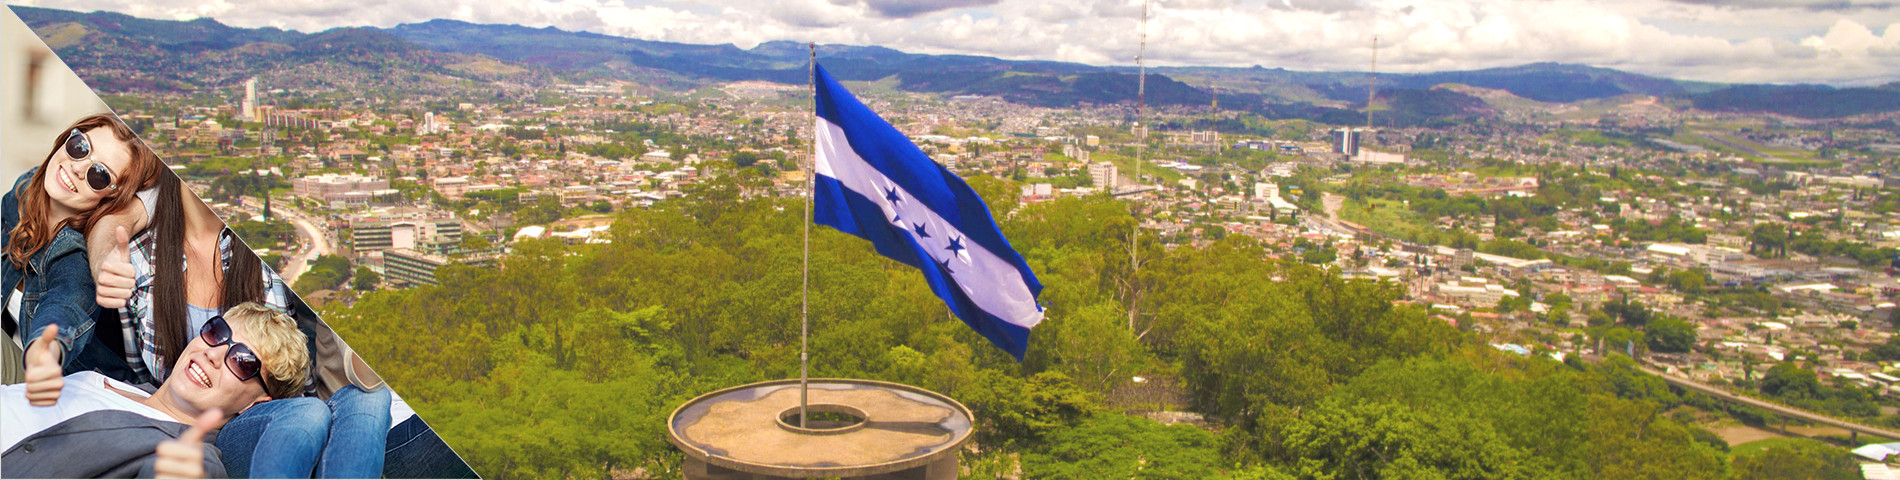 Honduras - Gite scolastiche / Gruppi / PON